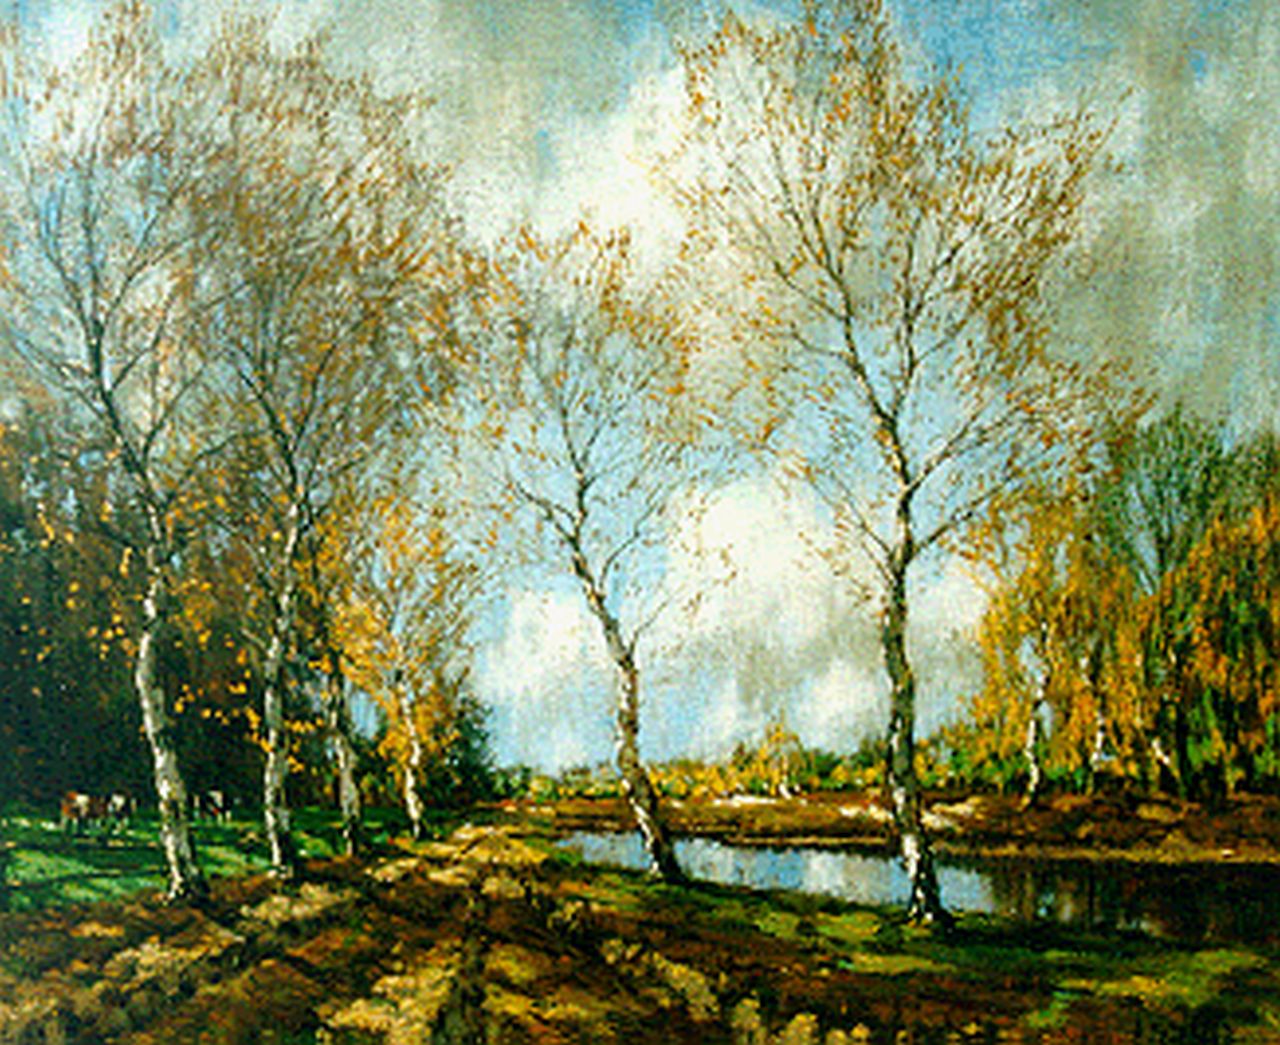 Gorter A.M.  | 'Arnold' Marc Gorter, Herfstlandschap met berkenbomen, olieverf op doek 46,3 x 56,2 cm, gesigneerd rechtsonder